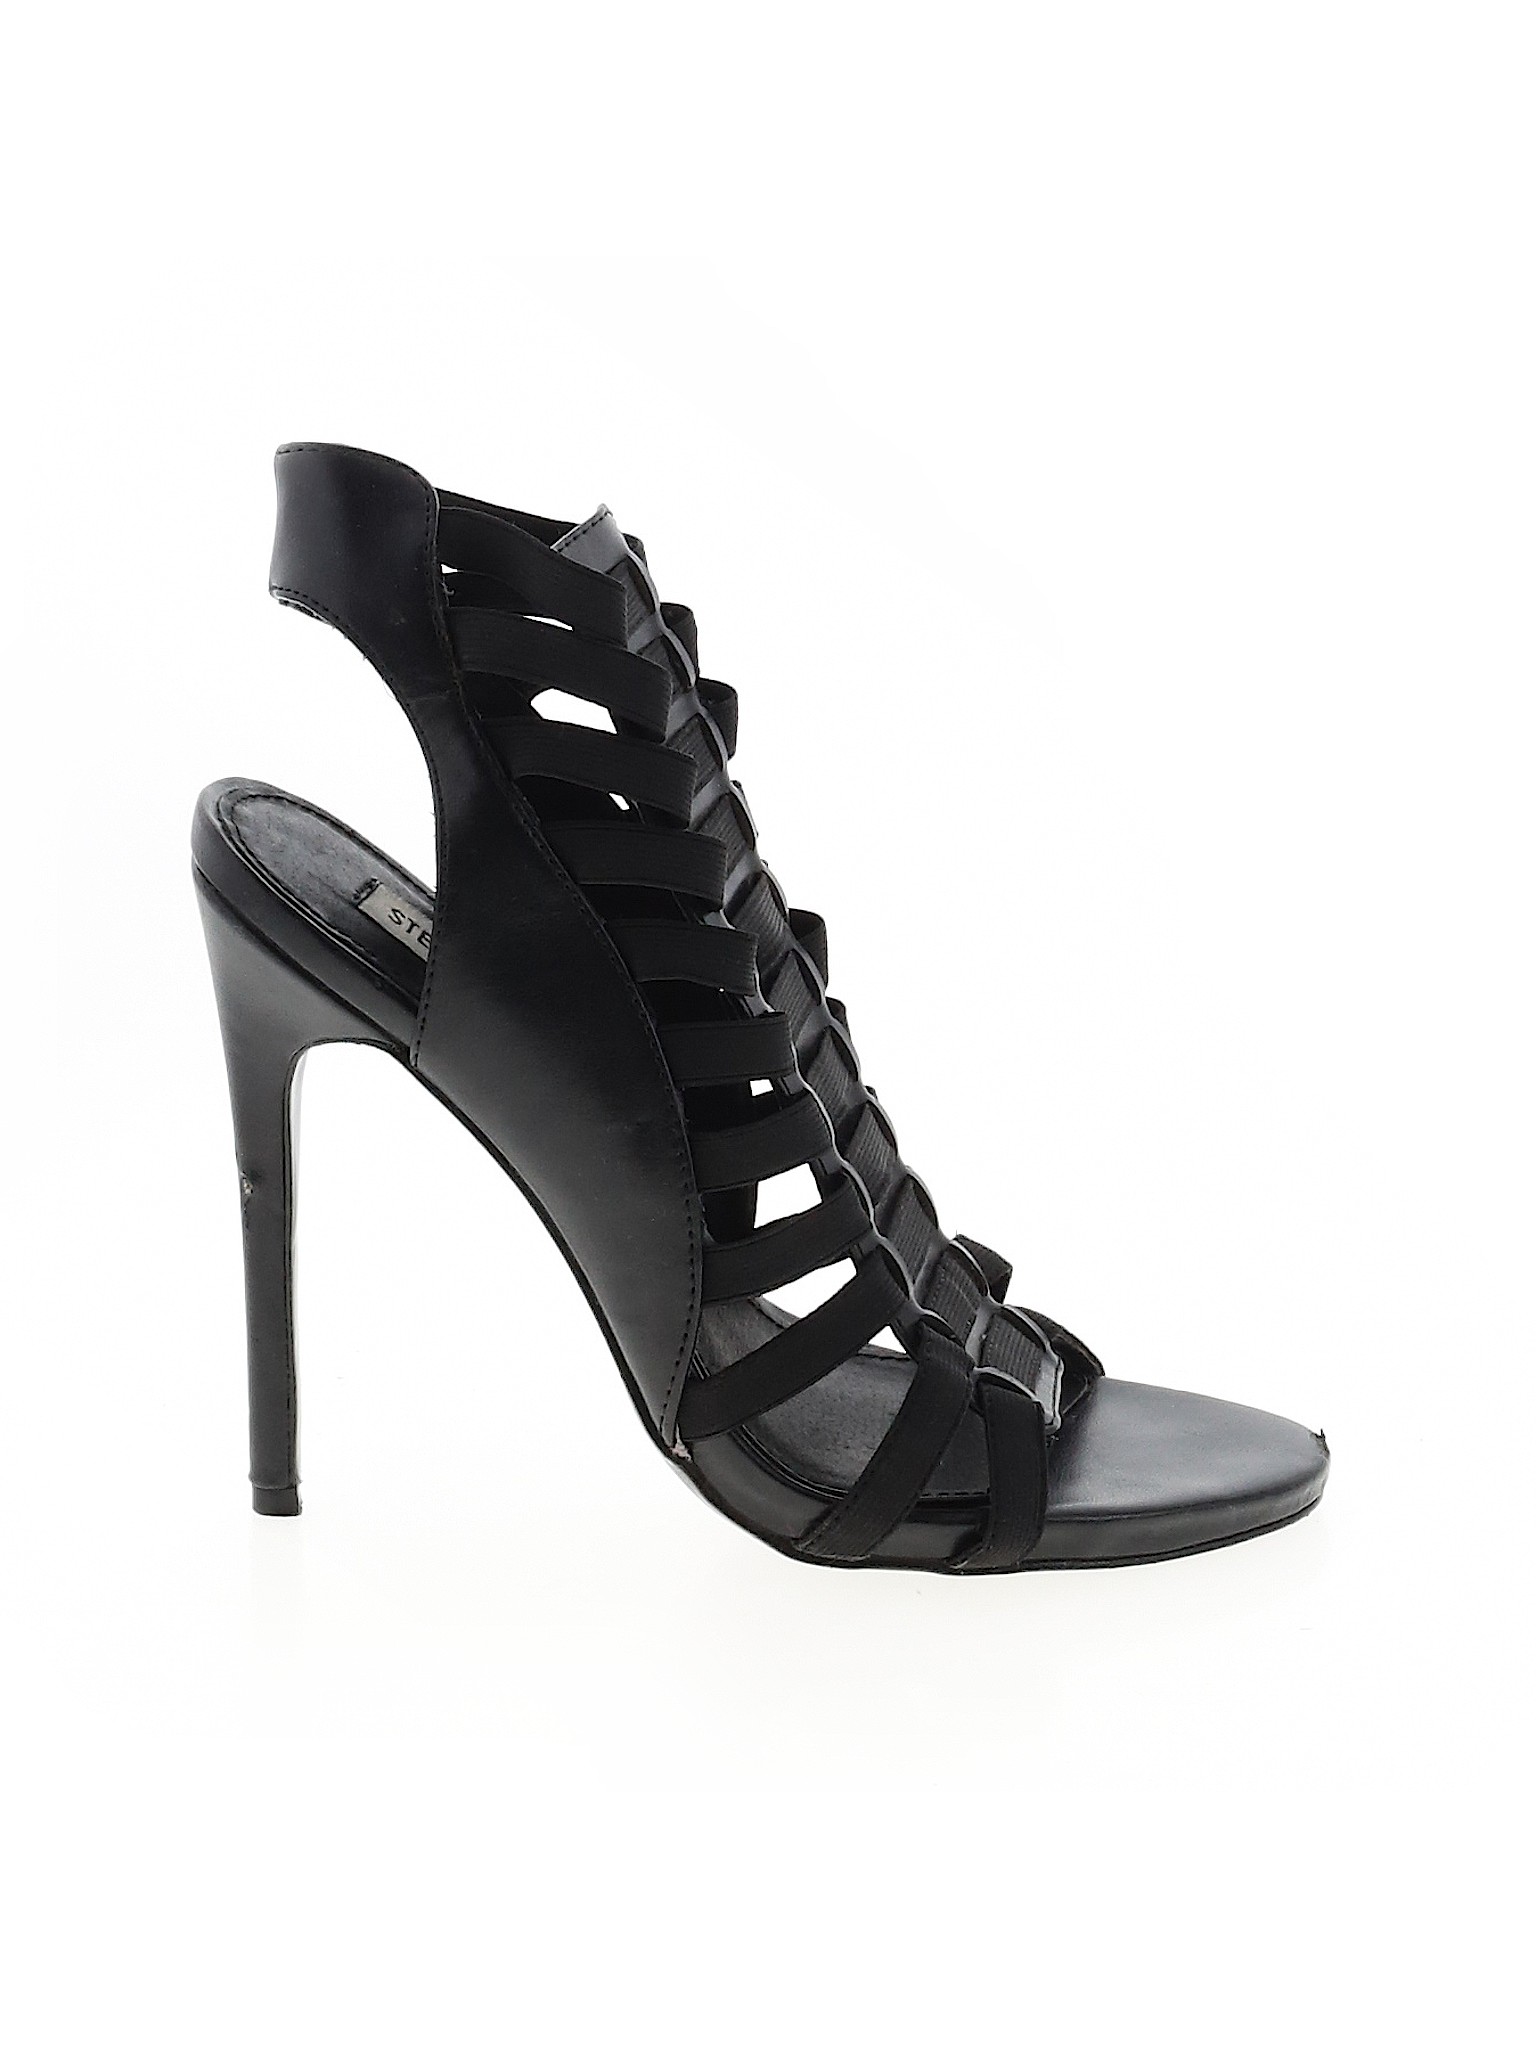 Steve Madden Women Black Heels US 7.5 | eBay